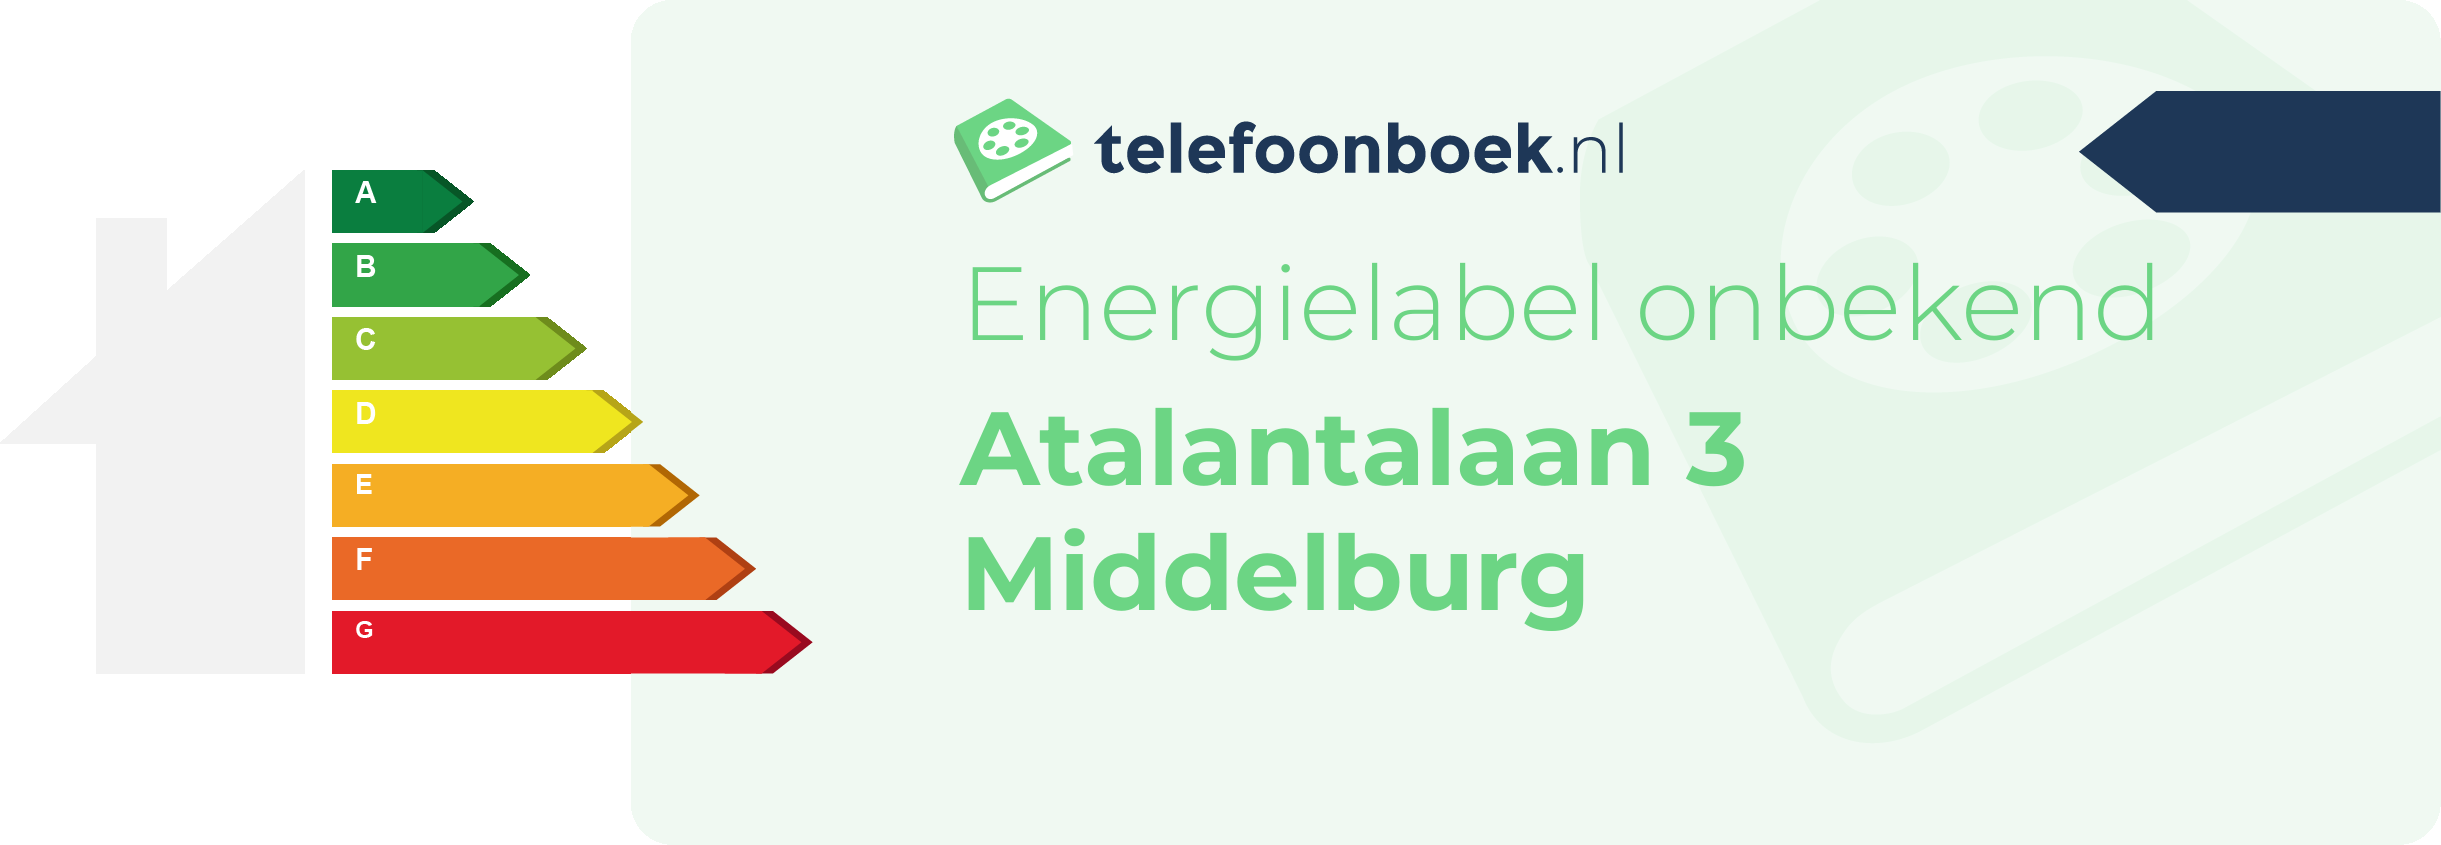 Energielabel Atalantalaan 3 Middelburg